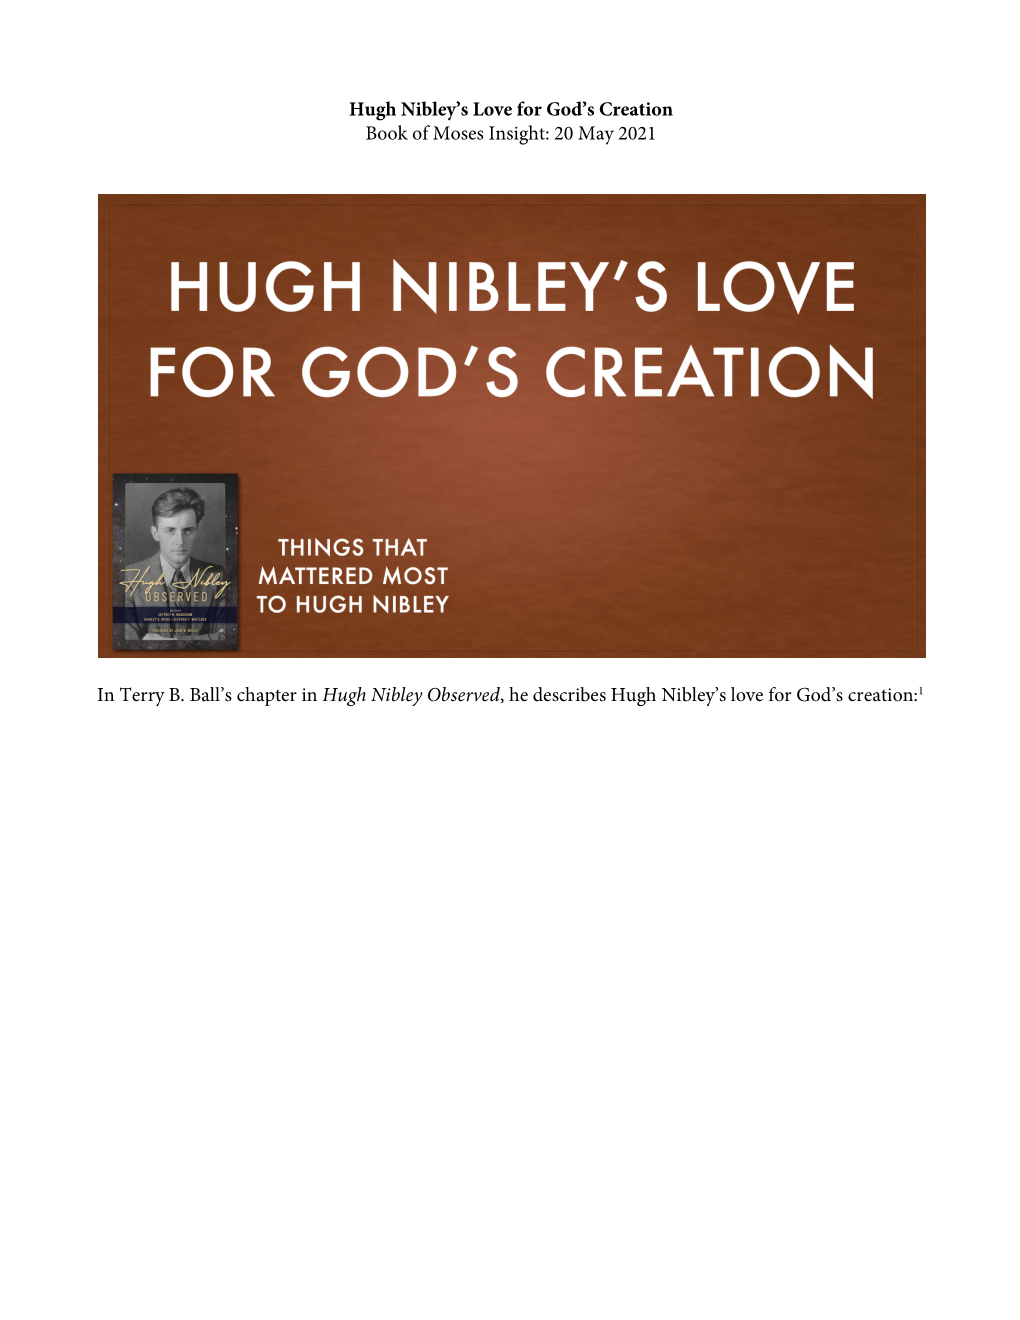 “Hugh Nibley's Love for God's Creation” (PDF)